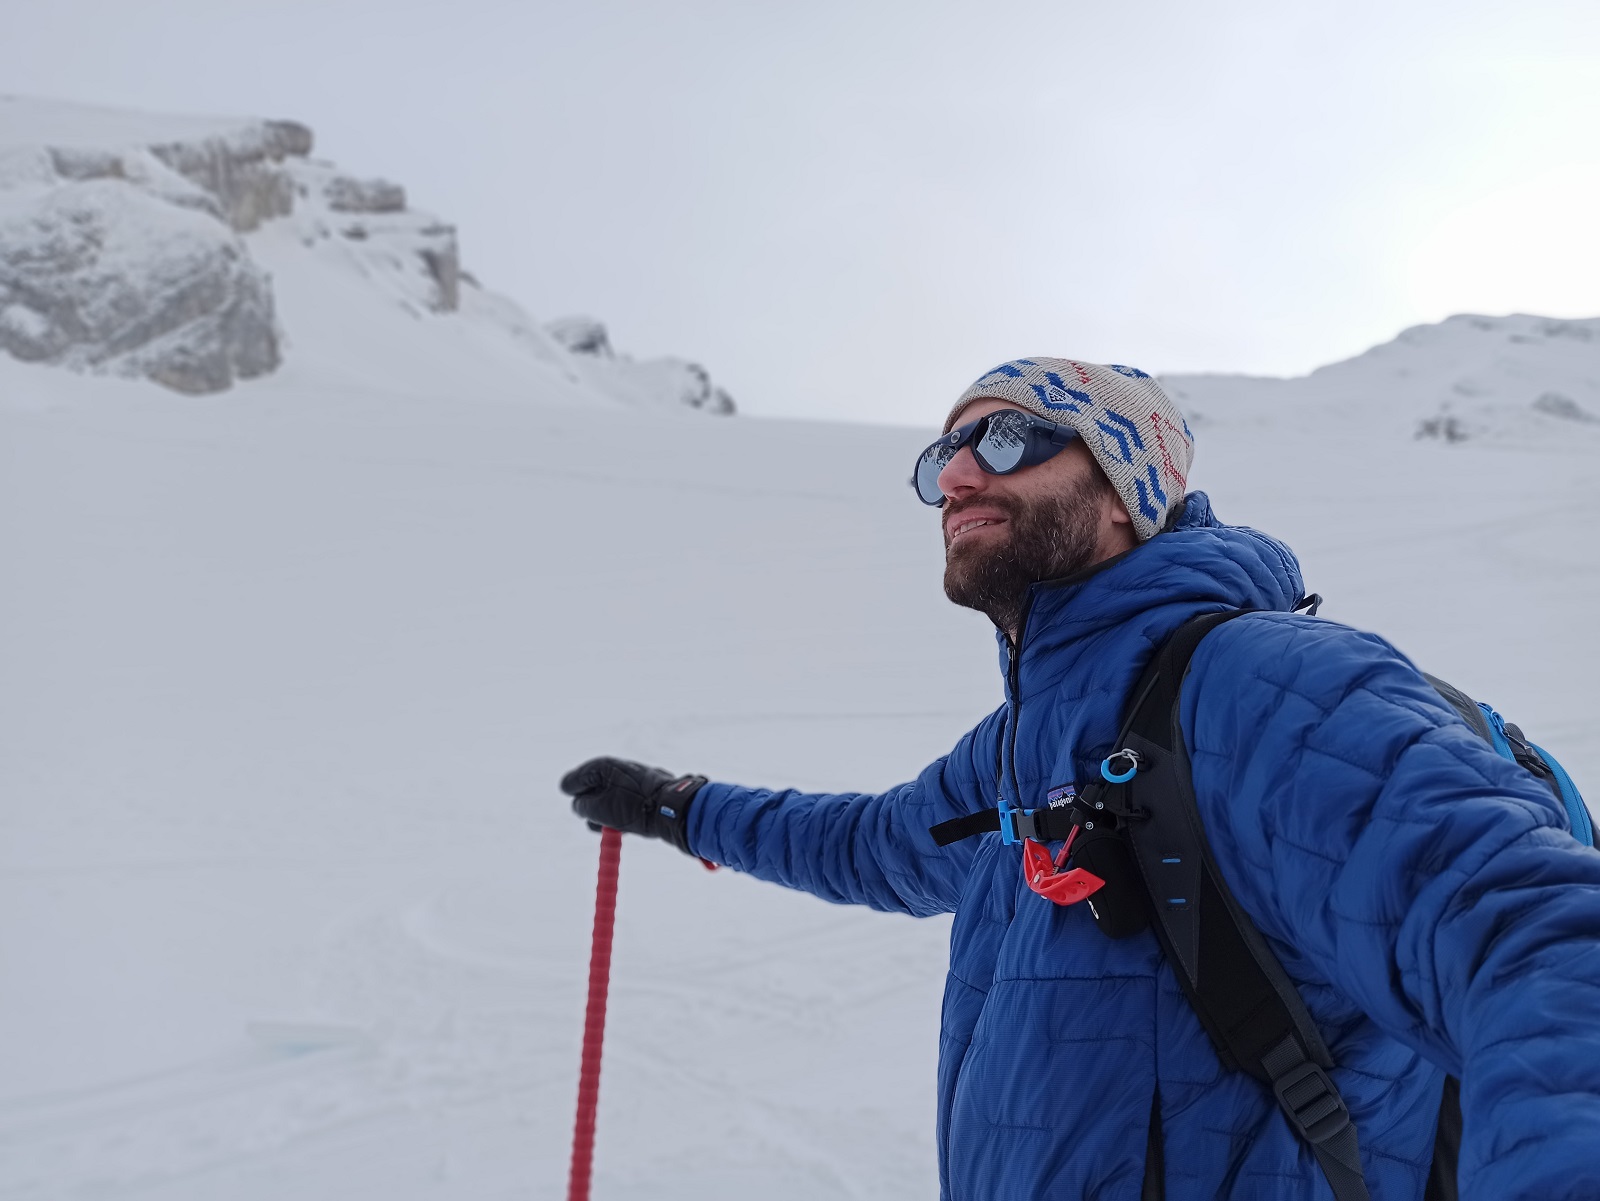 Glacier : la lunette de ski la plus stylée de l'hiver